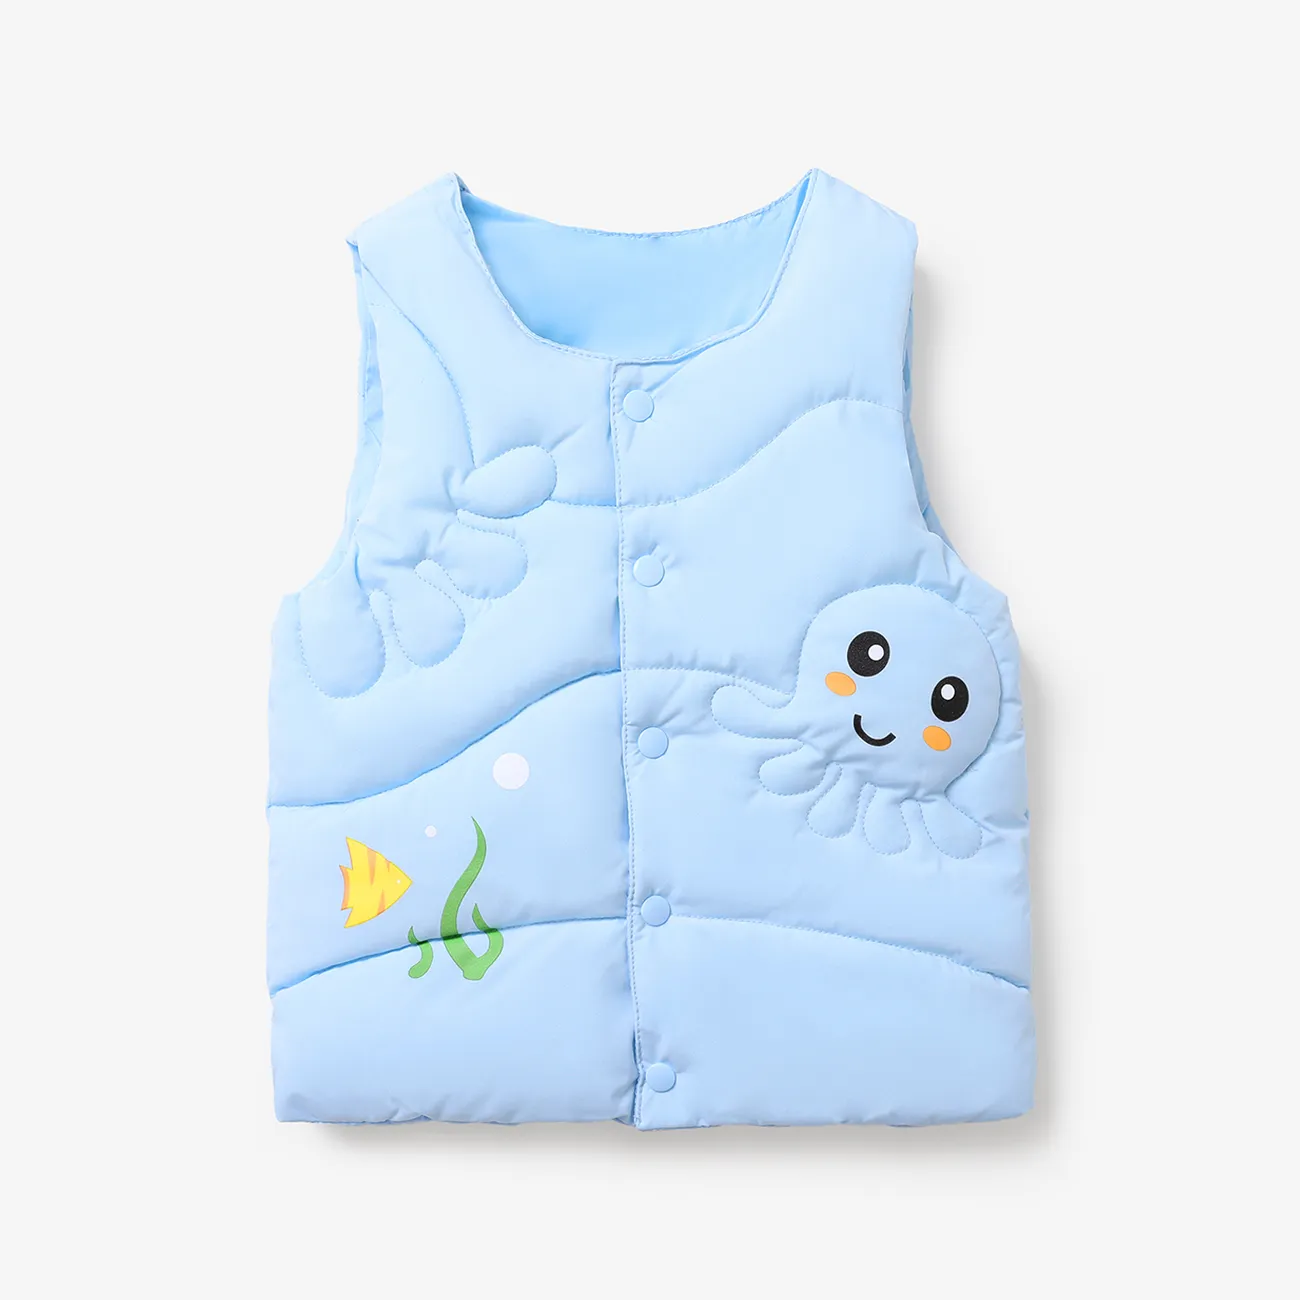 Toddler Boy/Girl Childlike Octopus Print Cotton-Padded Vest Coat Blue big image 1